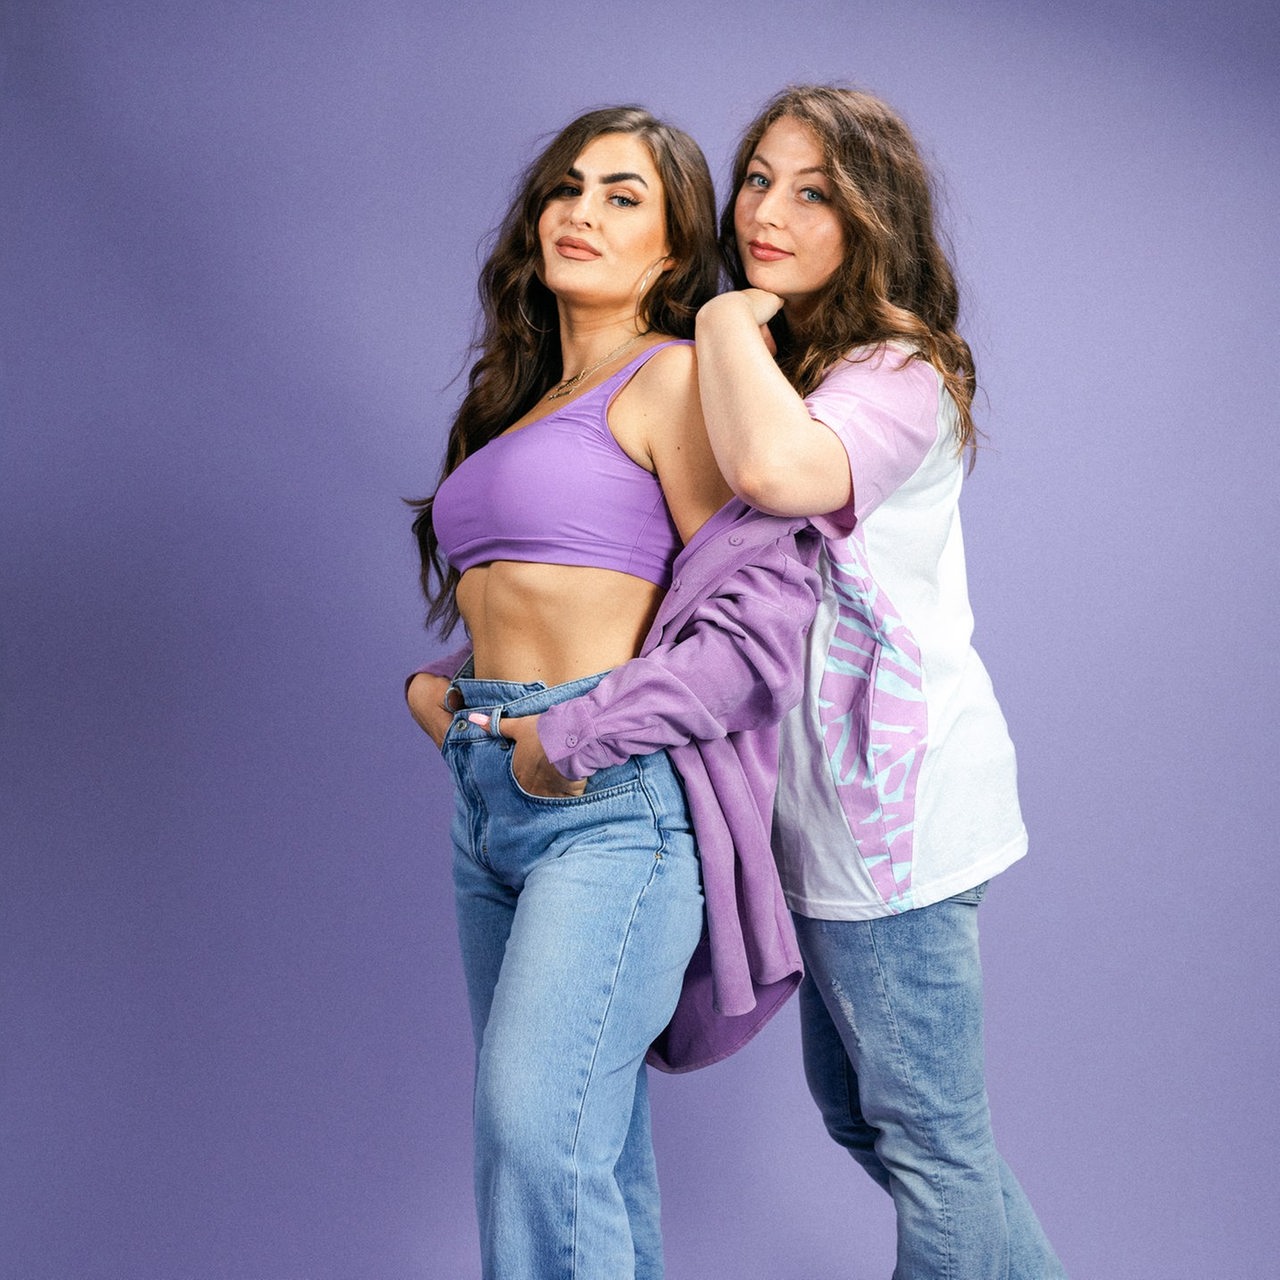 Karina und Larissa stehen vor einem violetten Hintergrund.